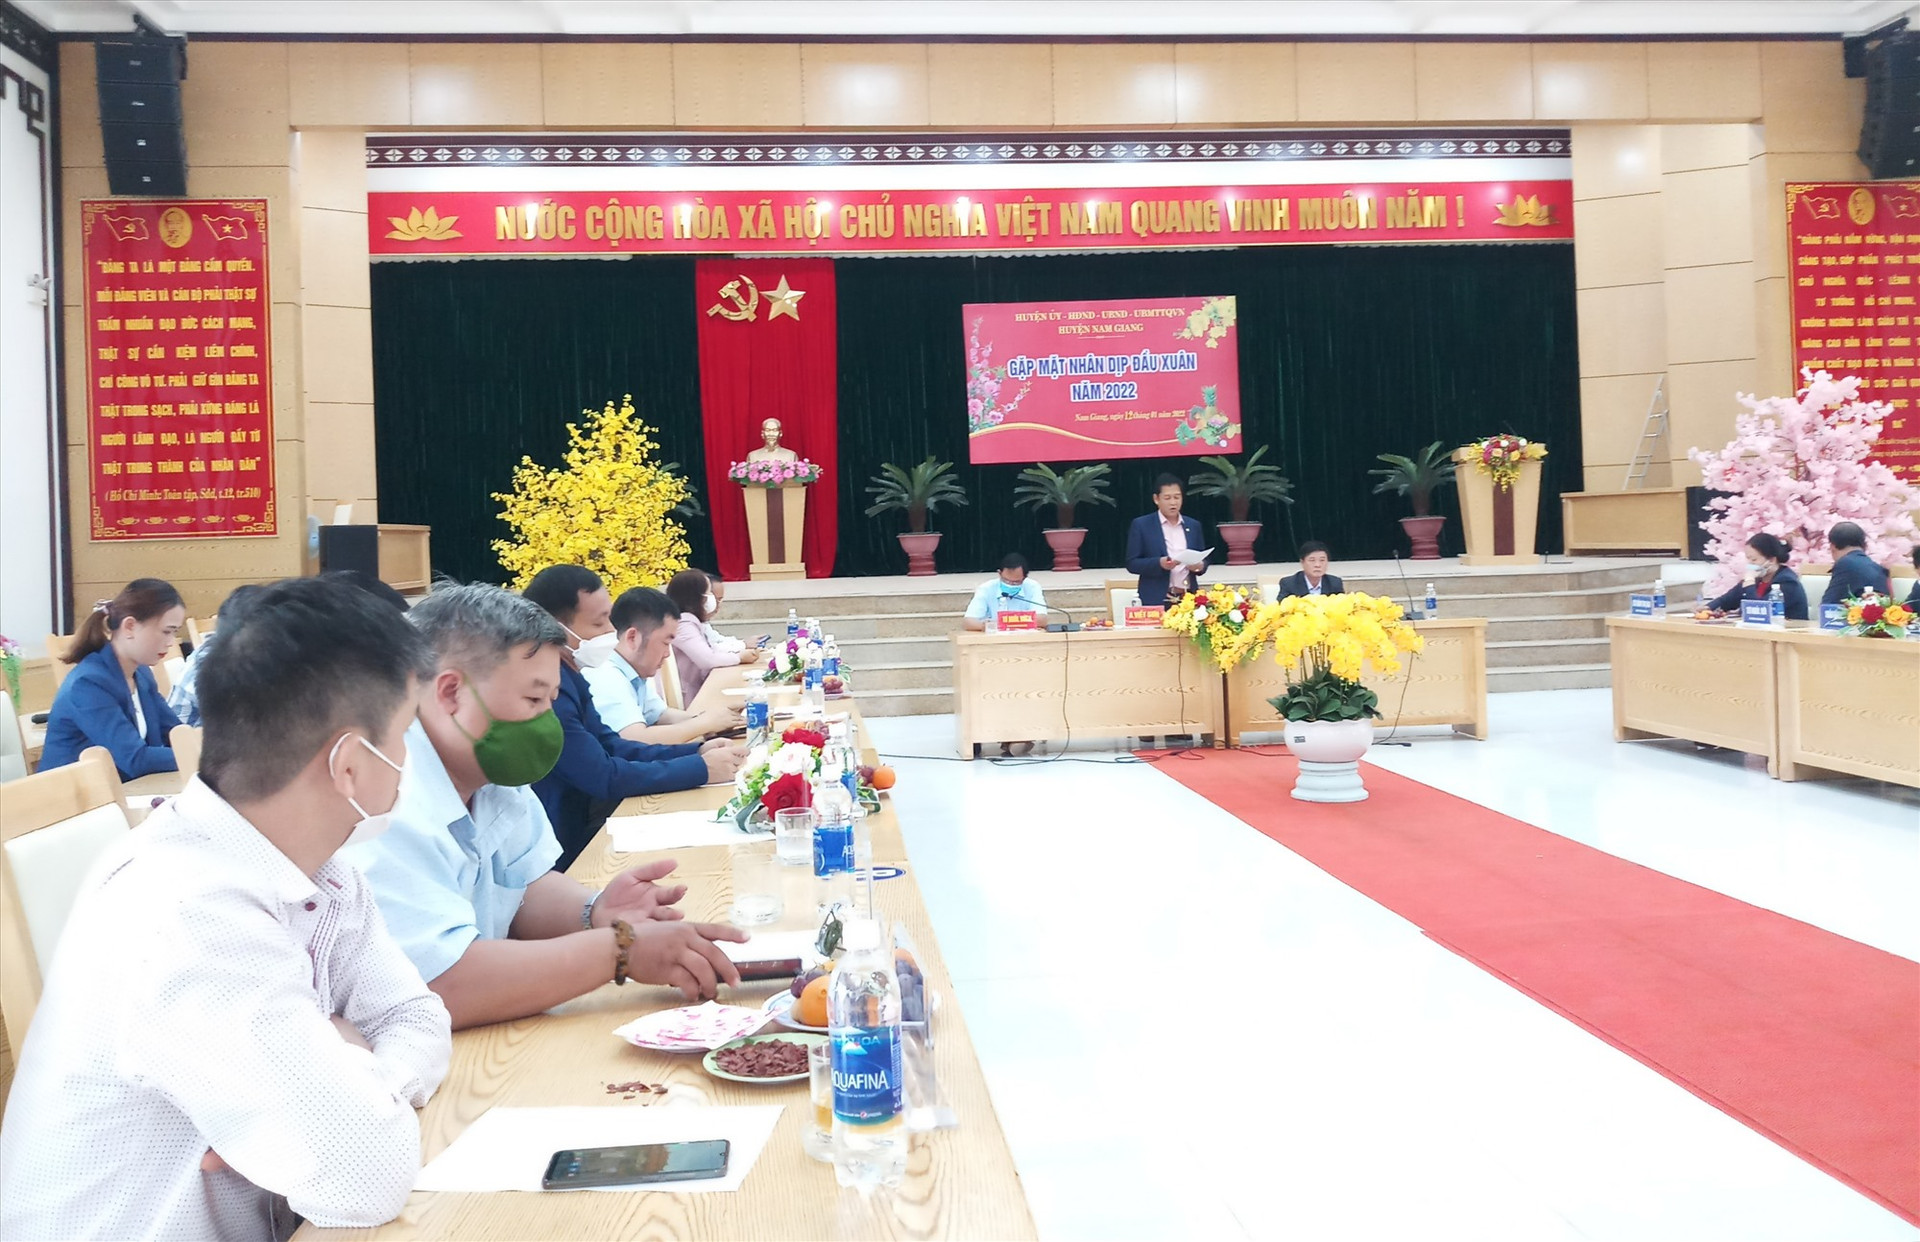 Chủ tịch UBND huyện Nam Giang - A Viết Sơn chia sẻ thông tin tại buổi gặp mặt. Ảnh: A.N